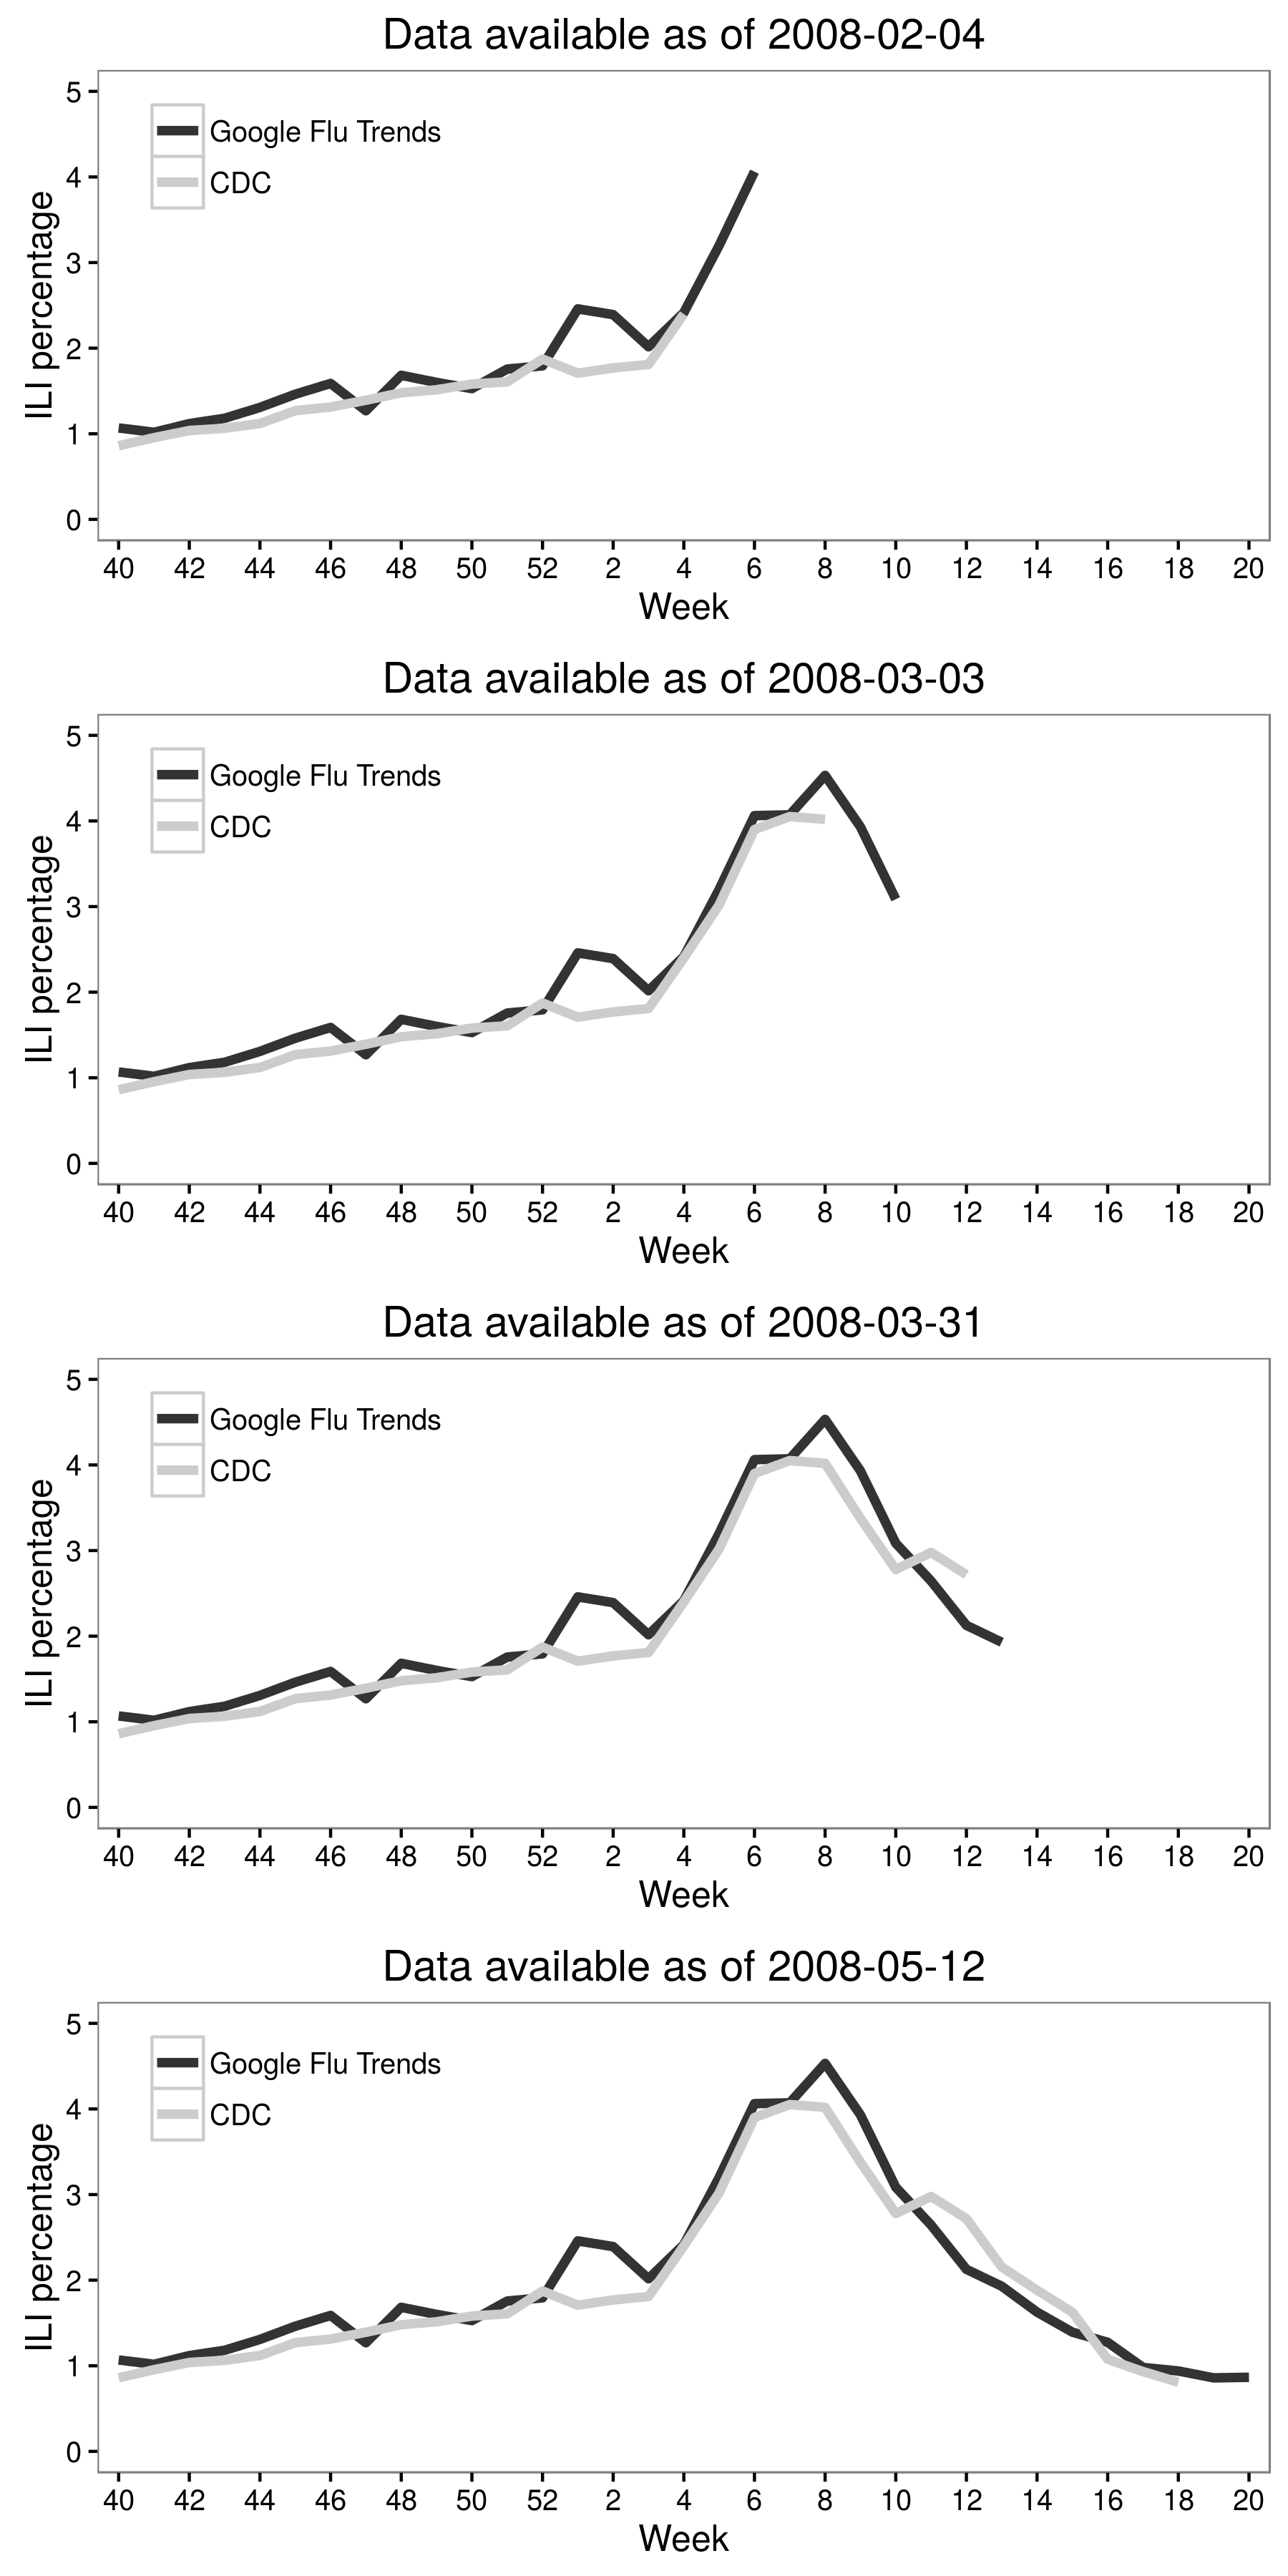 Figur 2.6: Jeremy Ginsberg och kollegor (2009) kombinerade Google-sökdata med CDC-data för att skapa Google Flu-trender, som skulle kunna döma graden av influensaliknande sjukdomar (ILI). Resultatet i denna siffra är för den midatlantiska regionen i Förenta staterna under influensasäsongen 2007-2008. Trots att det ursprungligen var mycket lovande, försvagades resultatet av Google Flu-trender över tiden (Cook et al., 2011; Olson et al., 2013; Lazer et al., 2014). Anpassad från Ginsberg et al. (2009), figur 3.